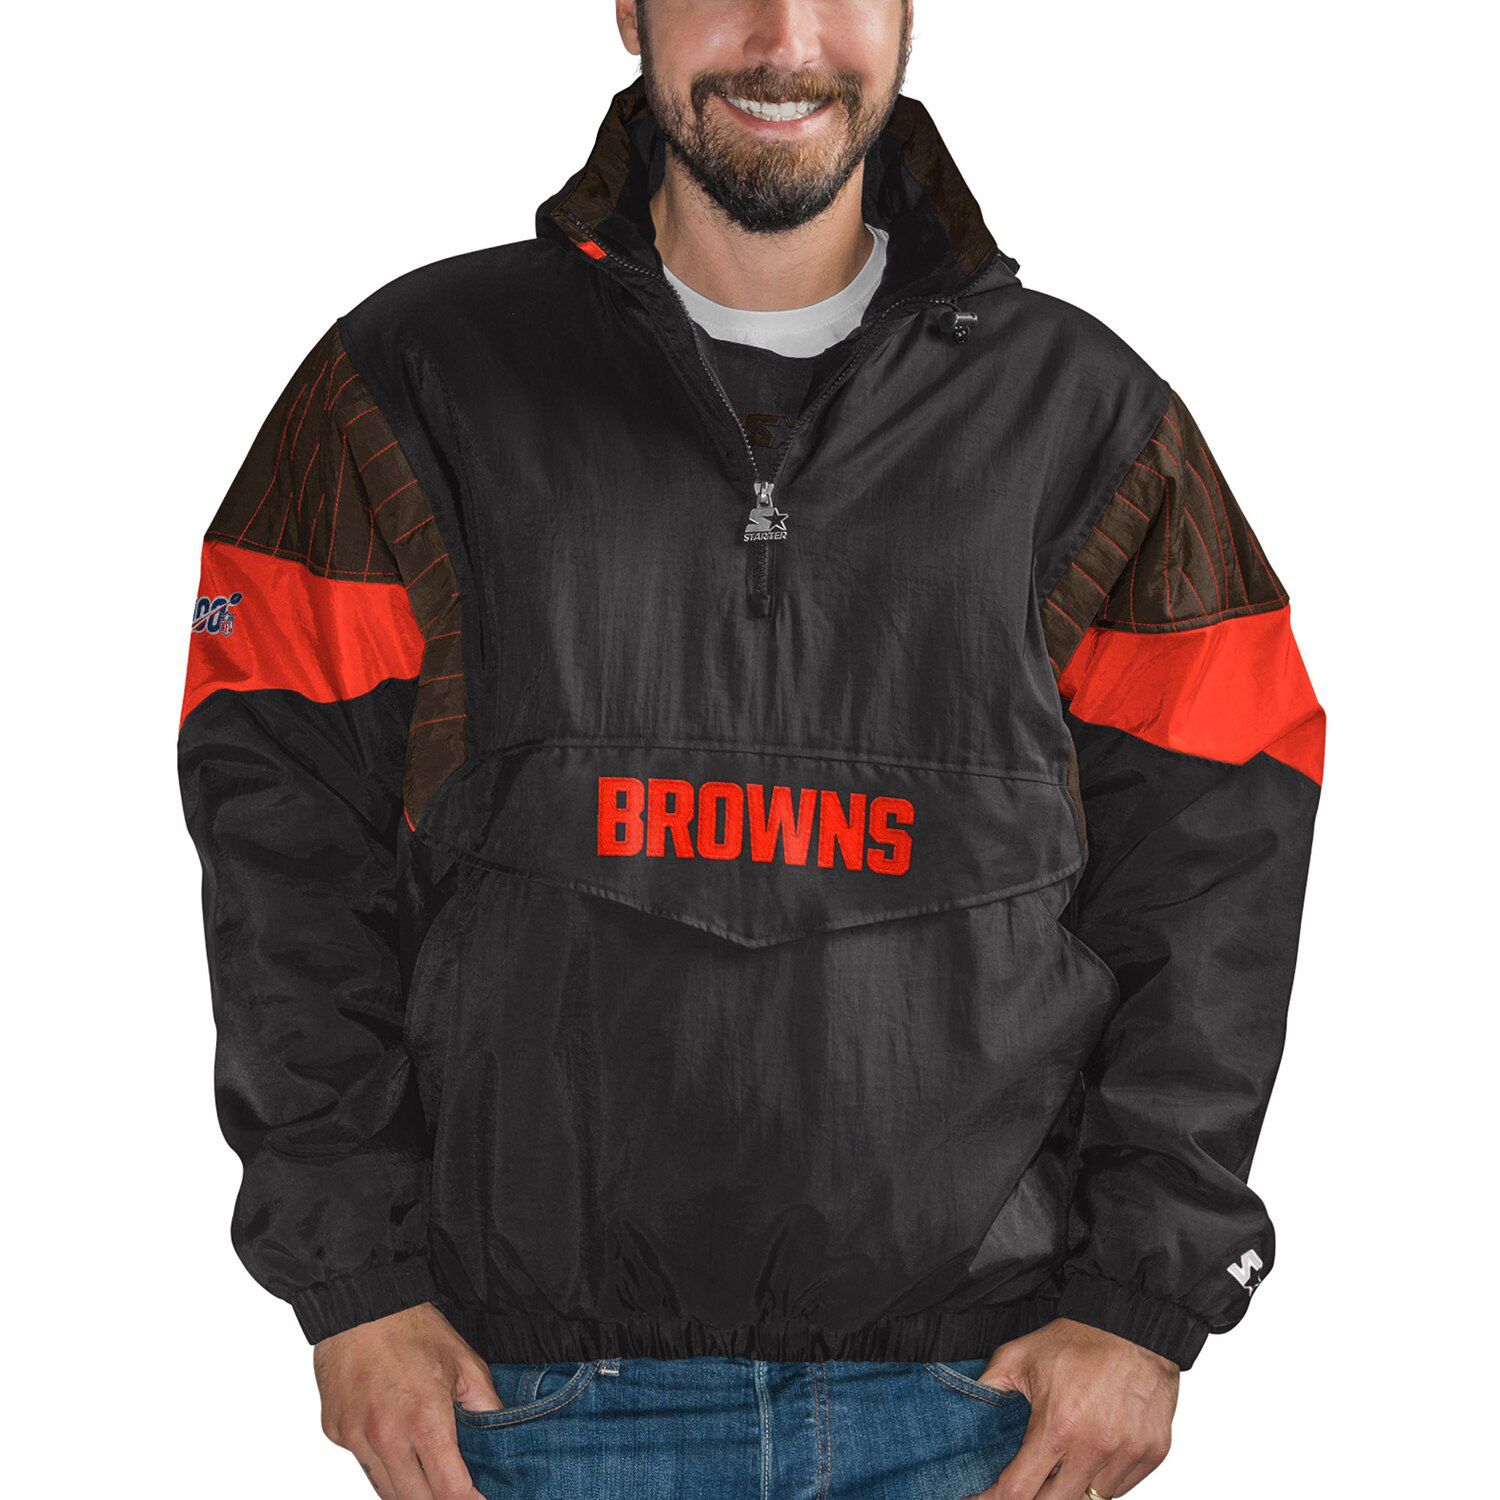 nfl browns jacket